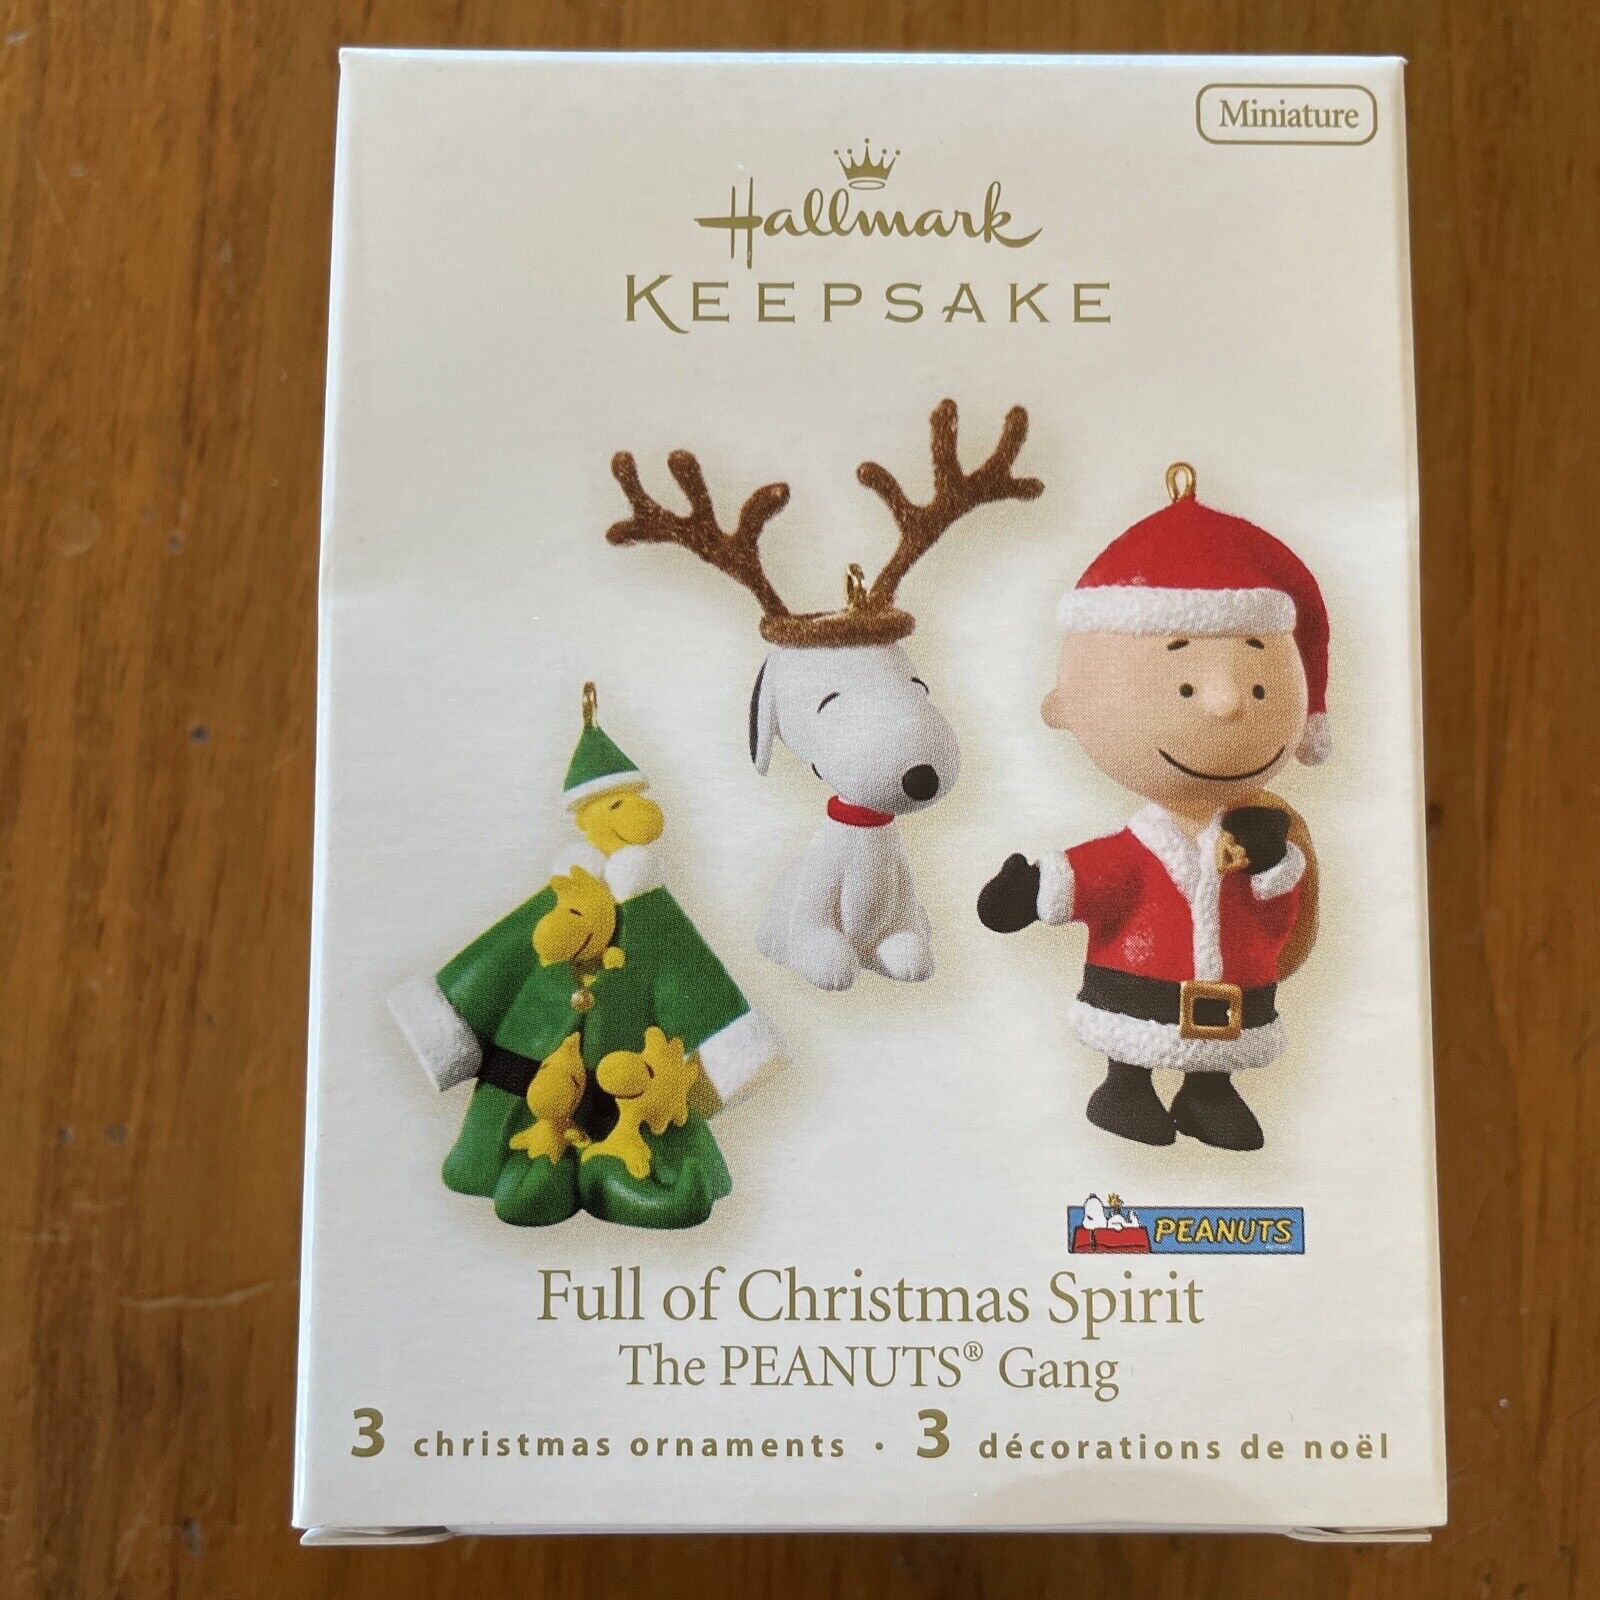 Hallmark 2008 Keepsake Miniature Ornaments Peanuts Gang Full of Christmas Spirit